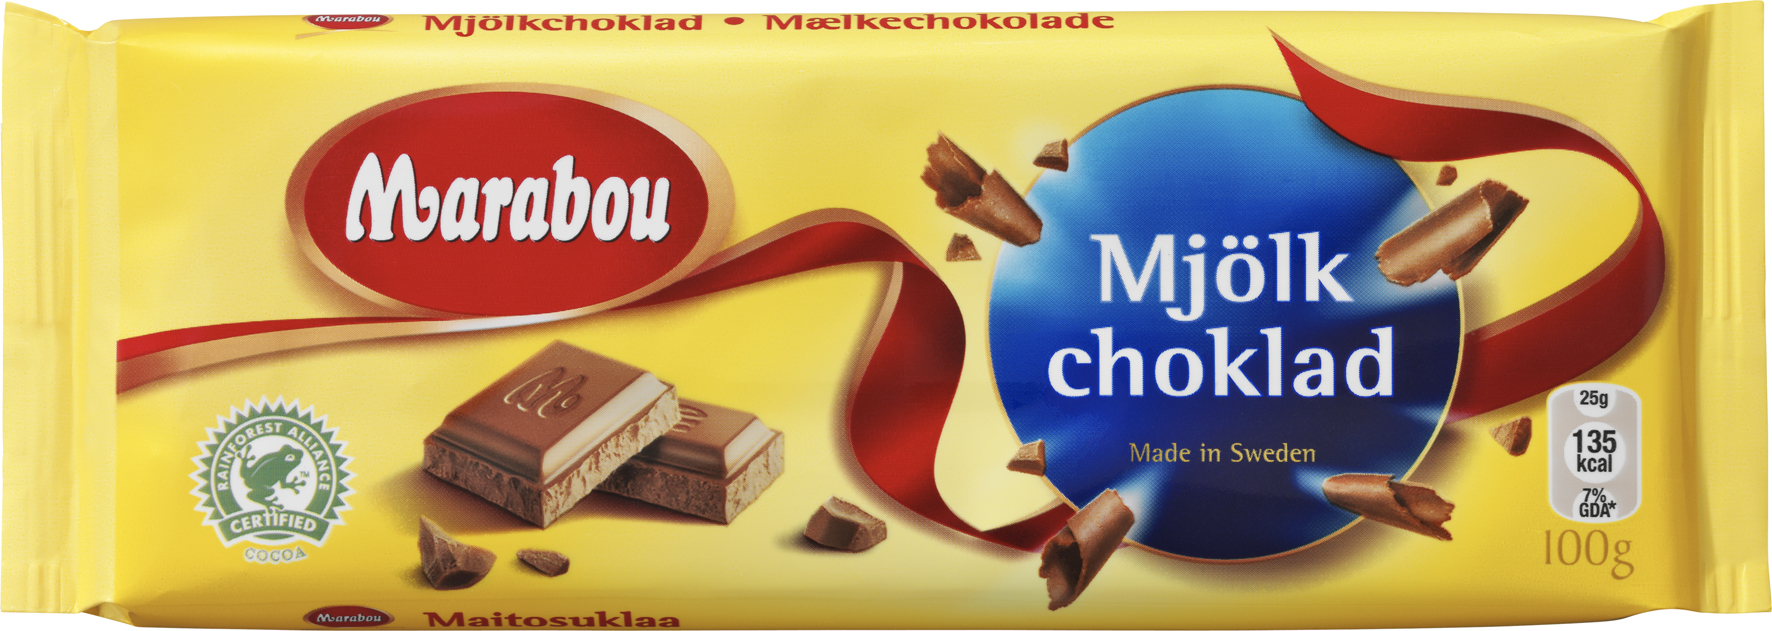 [8552236] Marabou Mjölkchoklad 100g